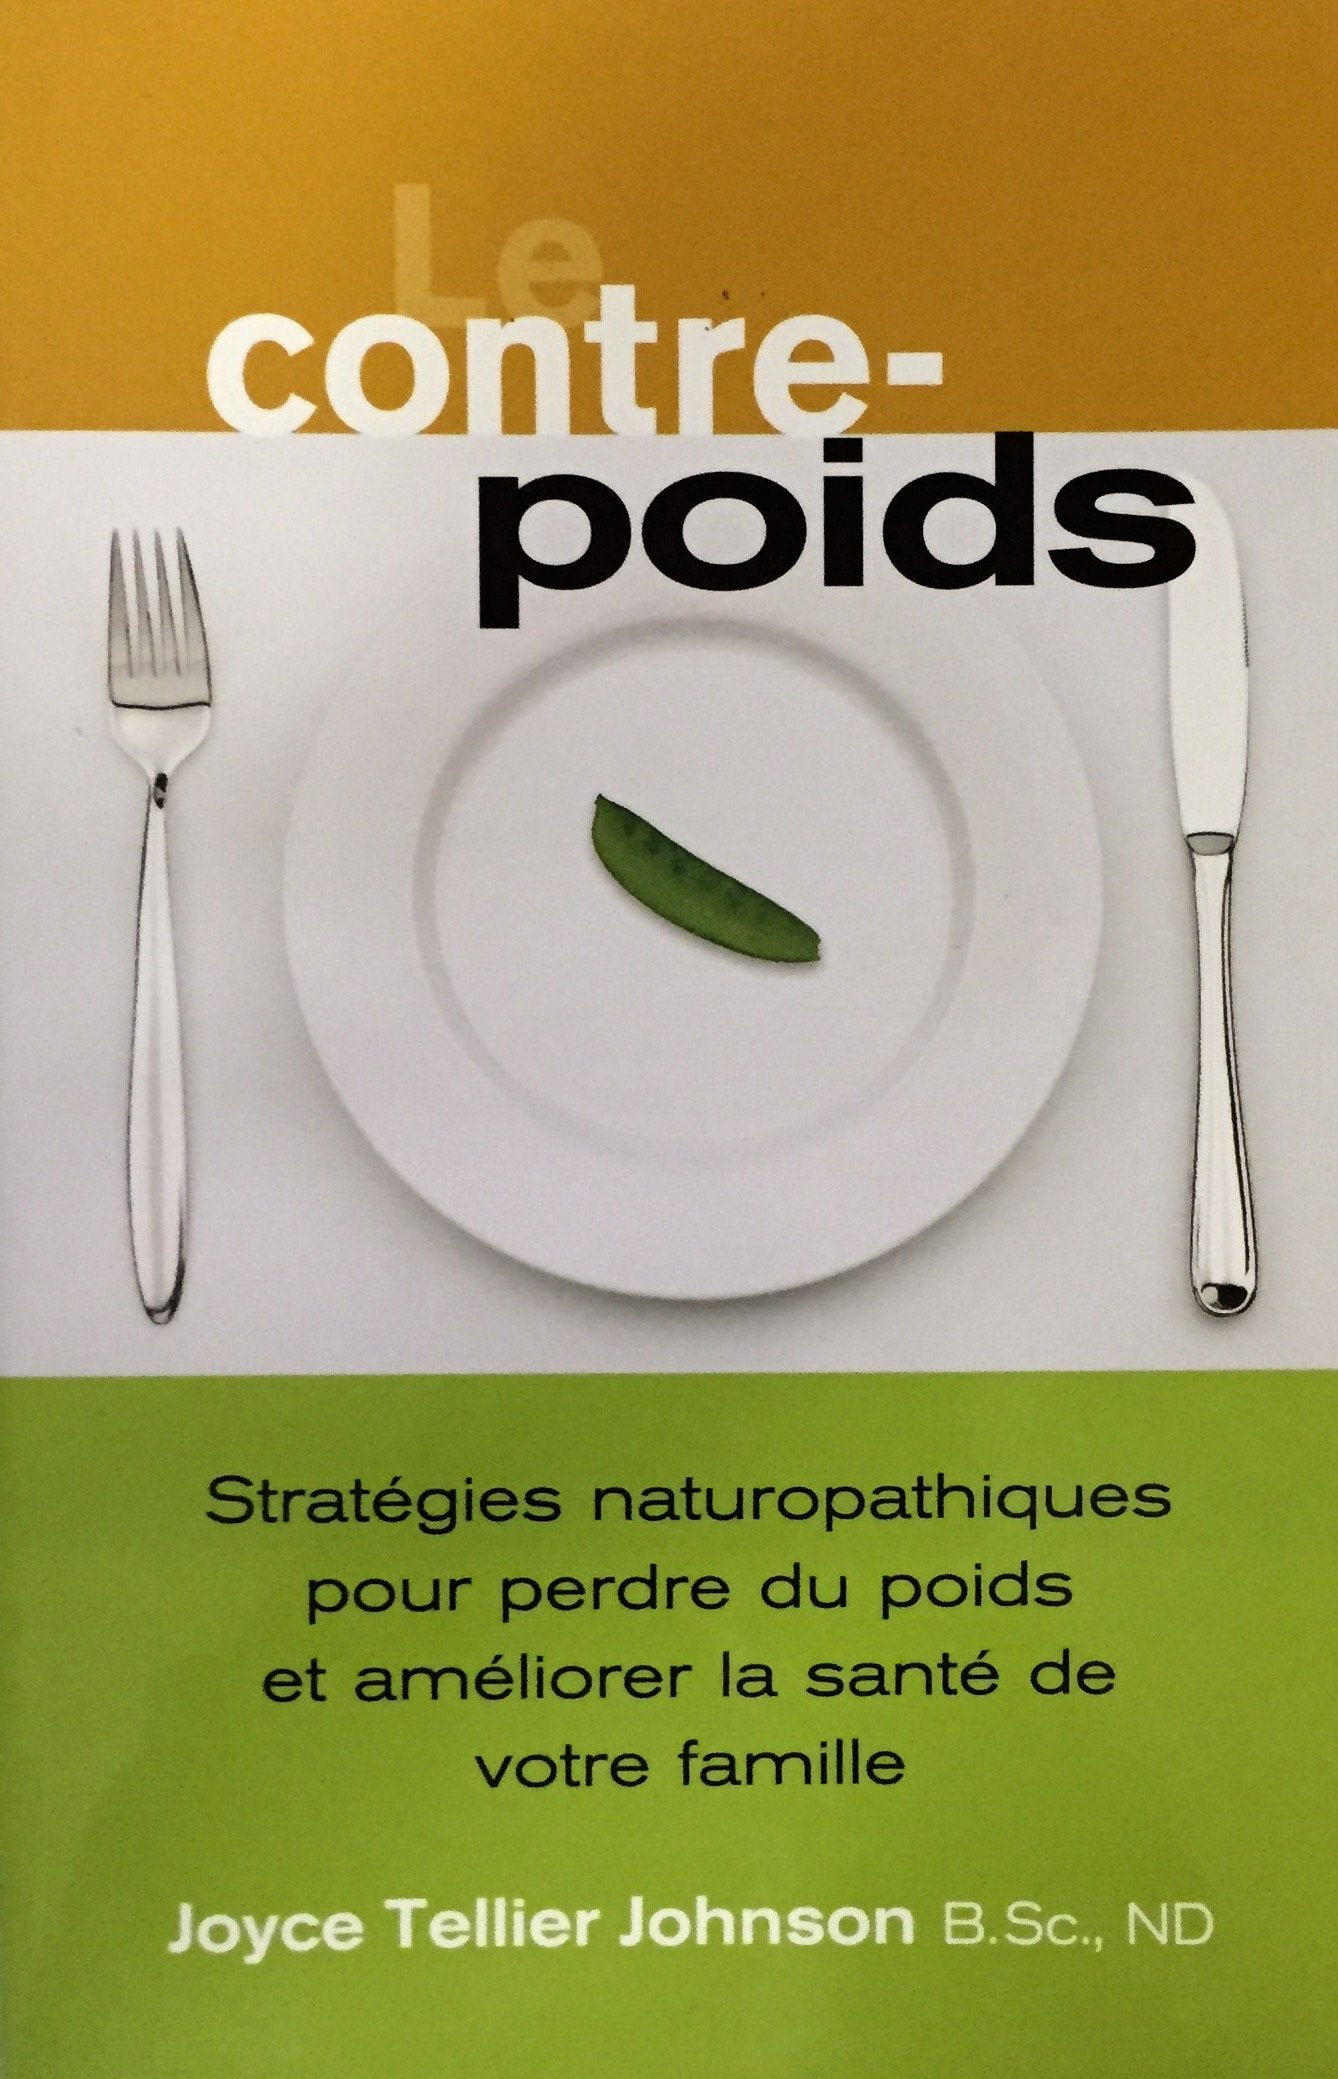 Livre ISBN 0978516893 Le contre-poids : Stratégies naturopathiques pour perdre du poids et améliorer la santé de votre famille) (Joyce Tellier Johnson)